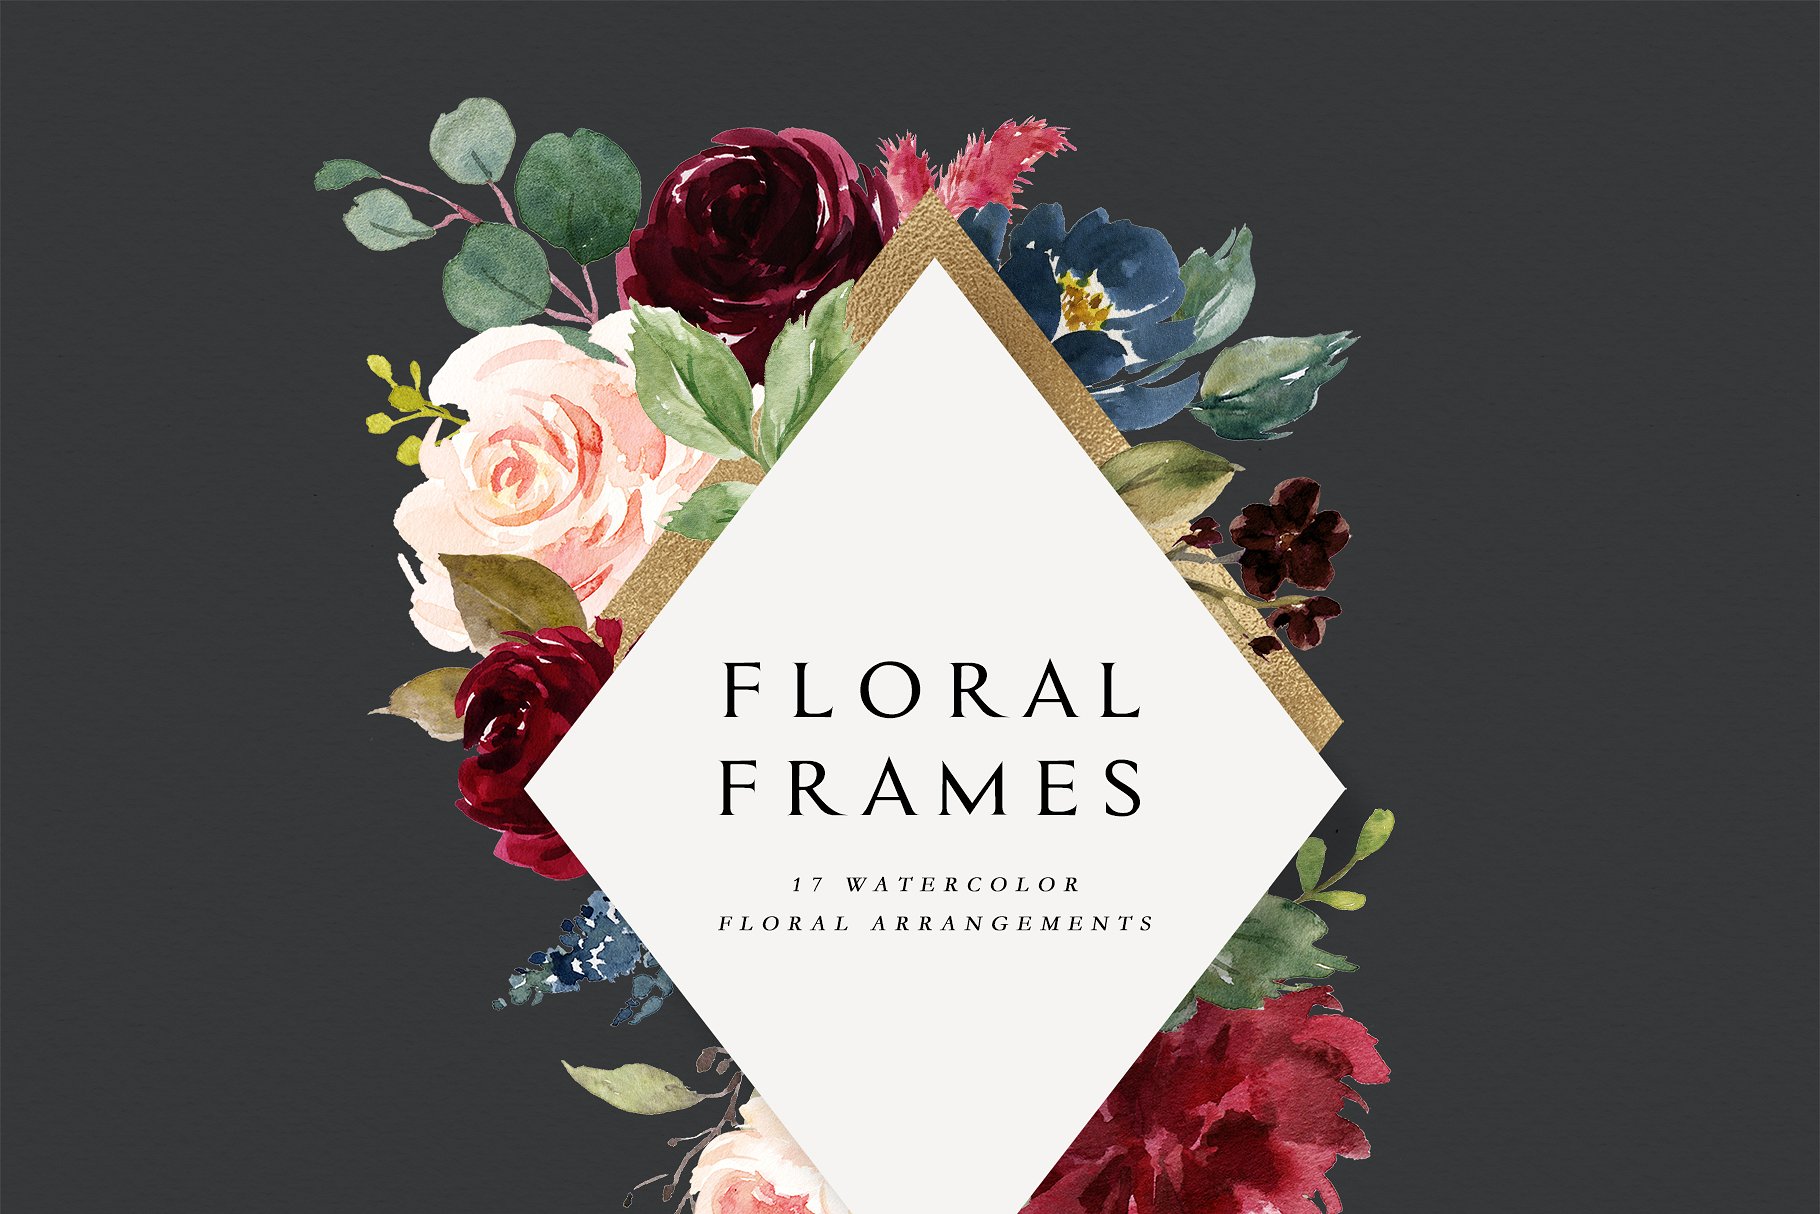 极力推荐：水彩花卉素材 Burgundy&Navy Floral Graphic Set [1.63GB]插图4